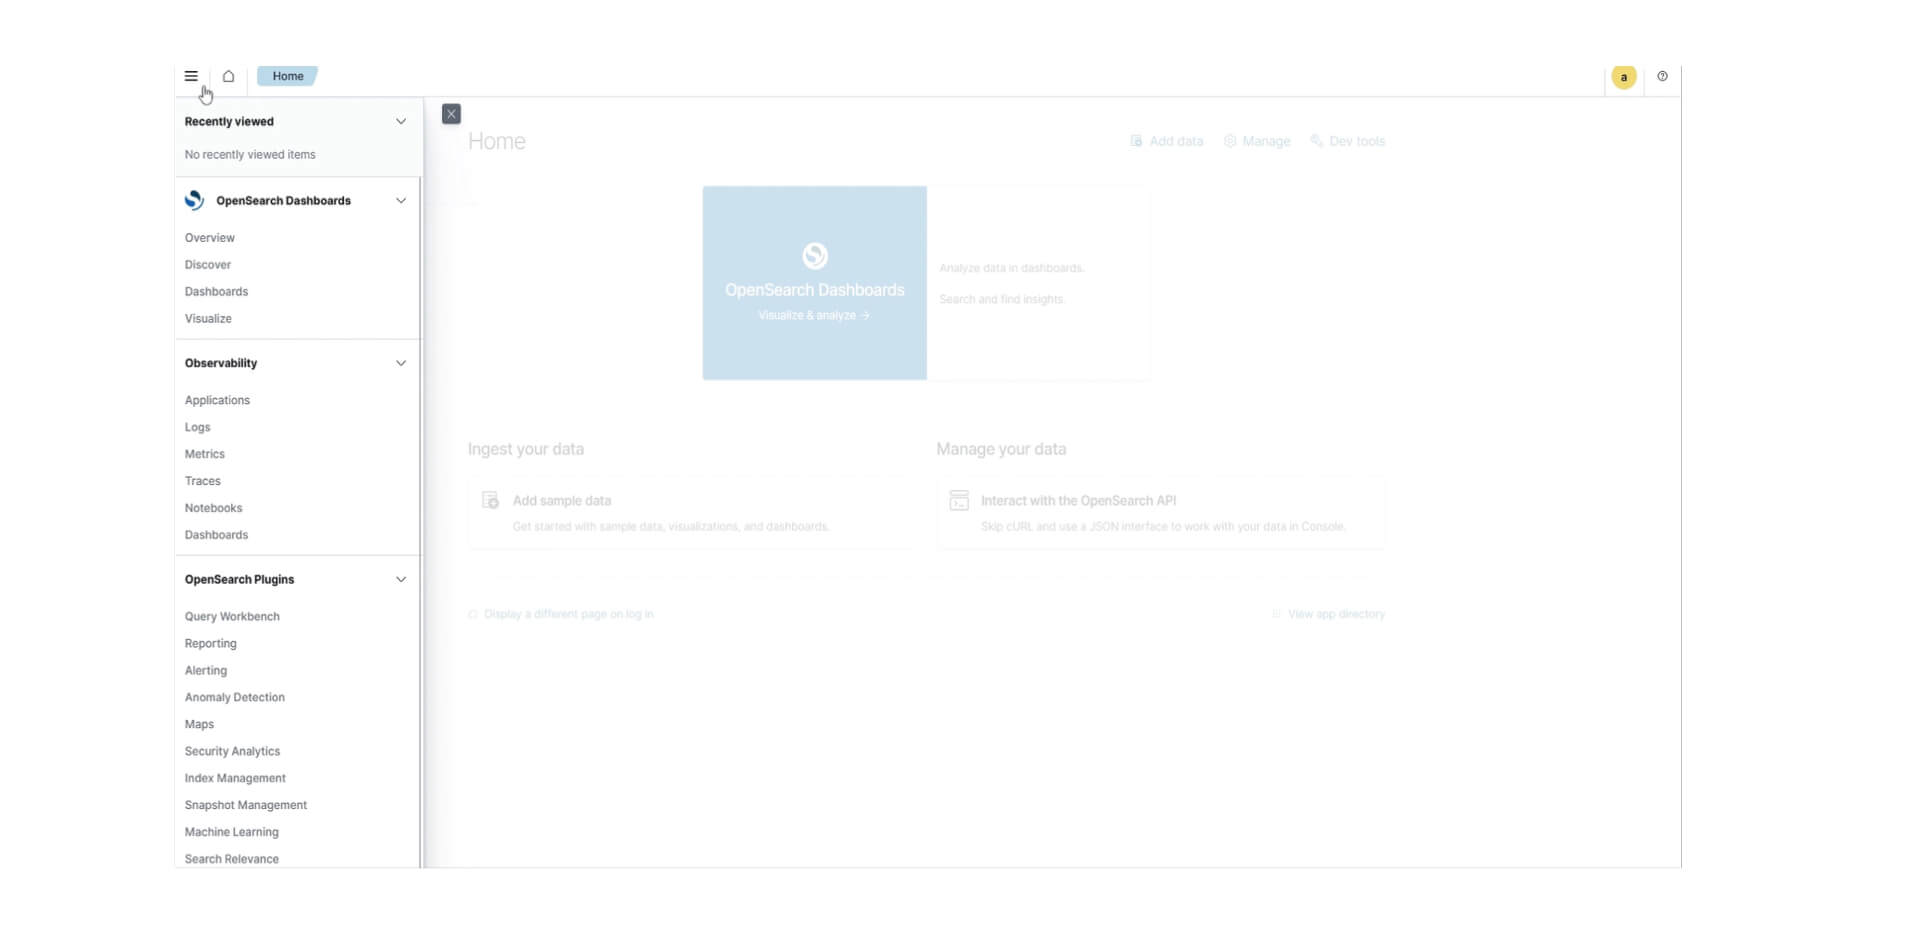 Das Bild zeigt einen Screenshot der Startseite von OpenSearch Dashboards. Die Benutzeroberfläche umfasst ein Navigationsmenü auf der linken Seite mit Abschnitten für 